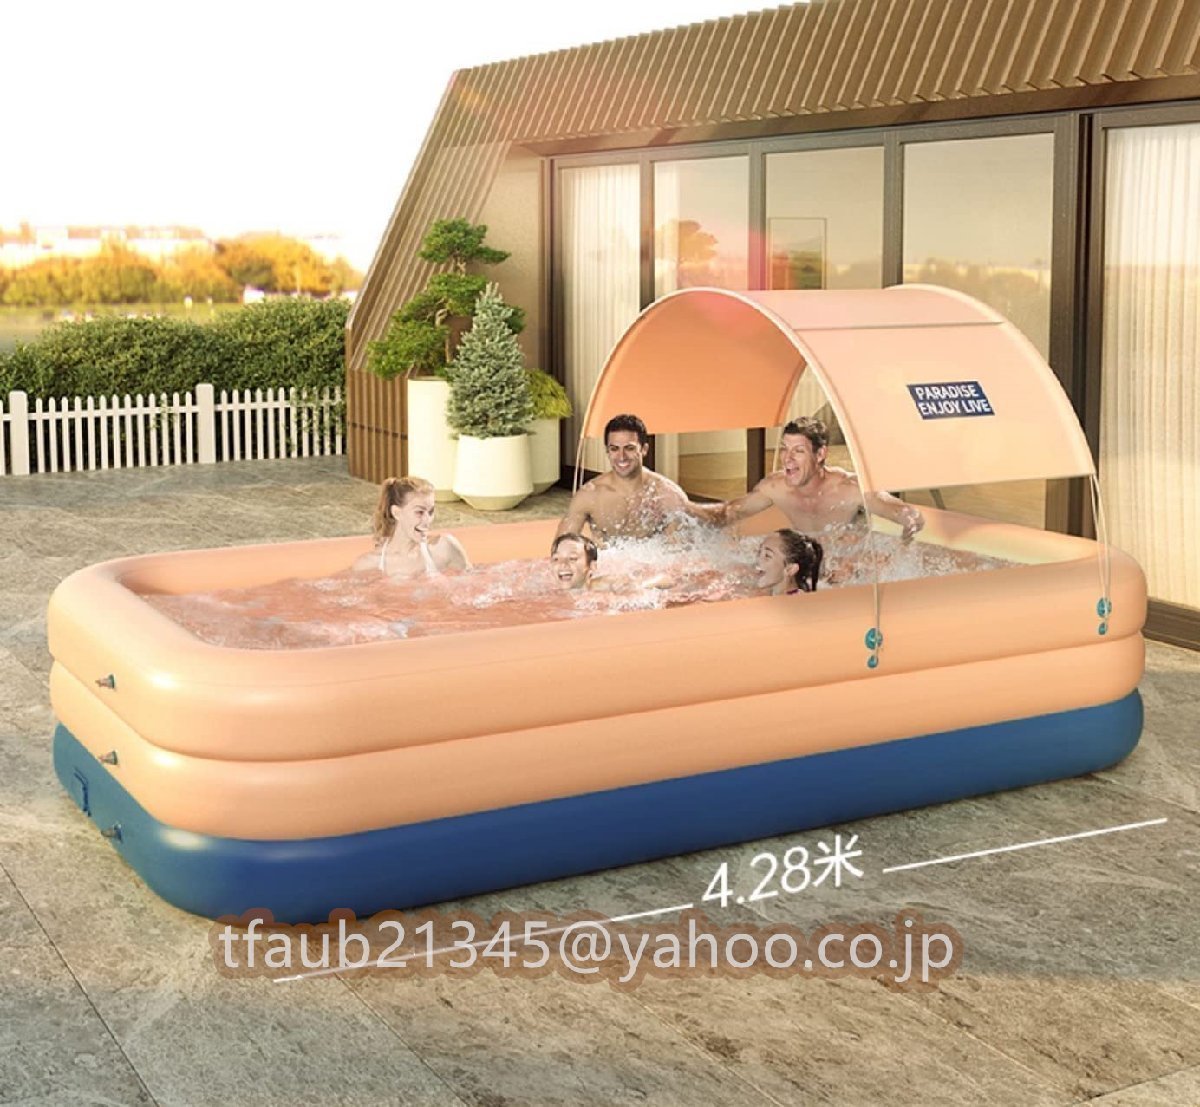 自動充気 ビニールプール 水遊び 家庭用プール 子供用ビニールプール キッズプール エアープール 260cm三層_画像2